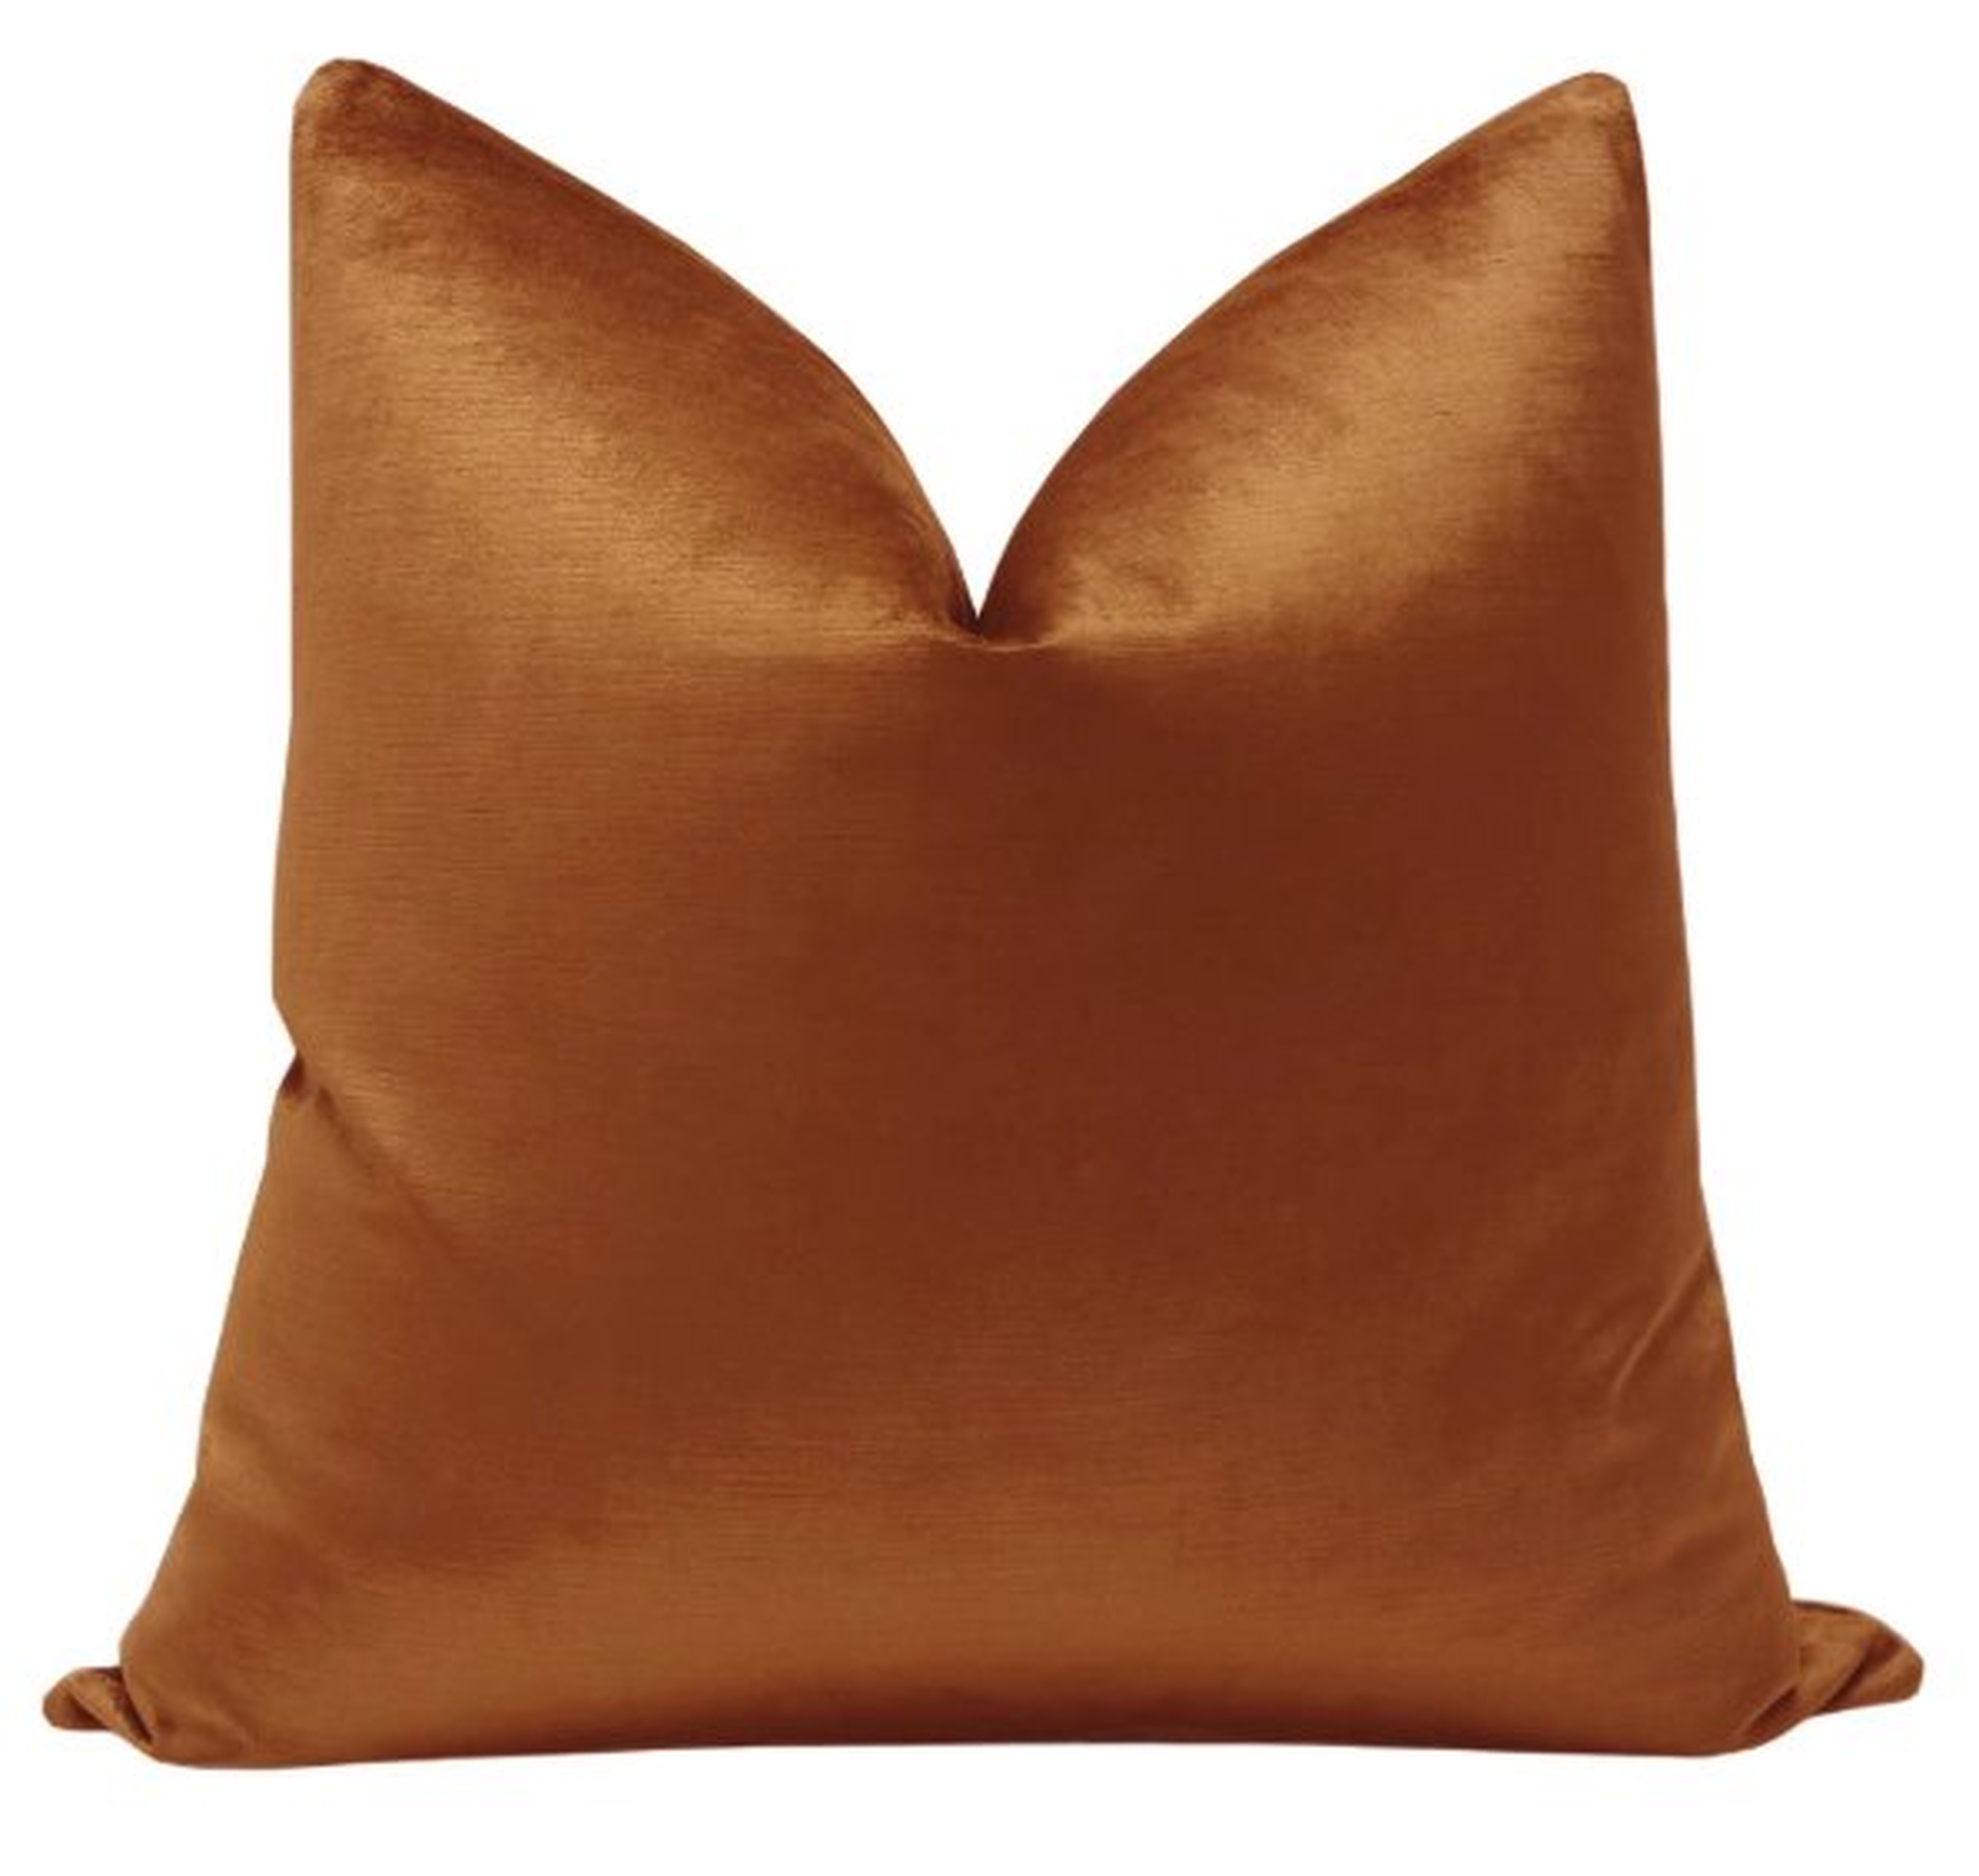 Luxe Velvet // Amber-Pillow Cover 20 x 20 - Little Design Company